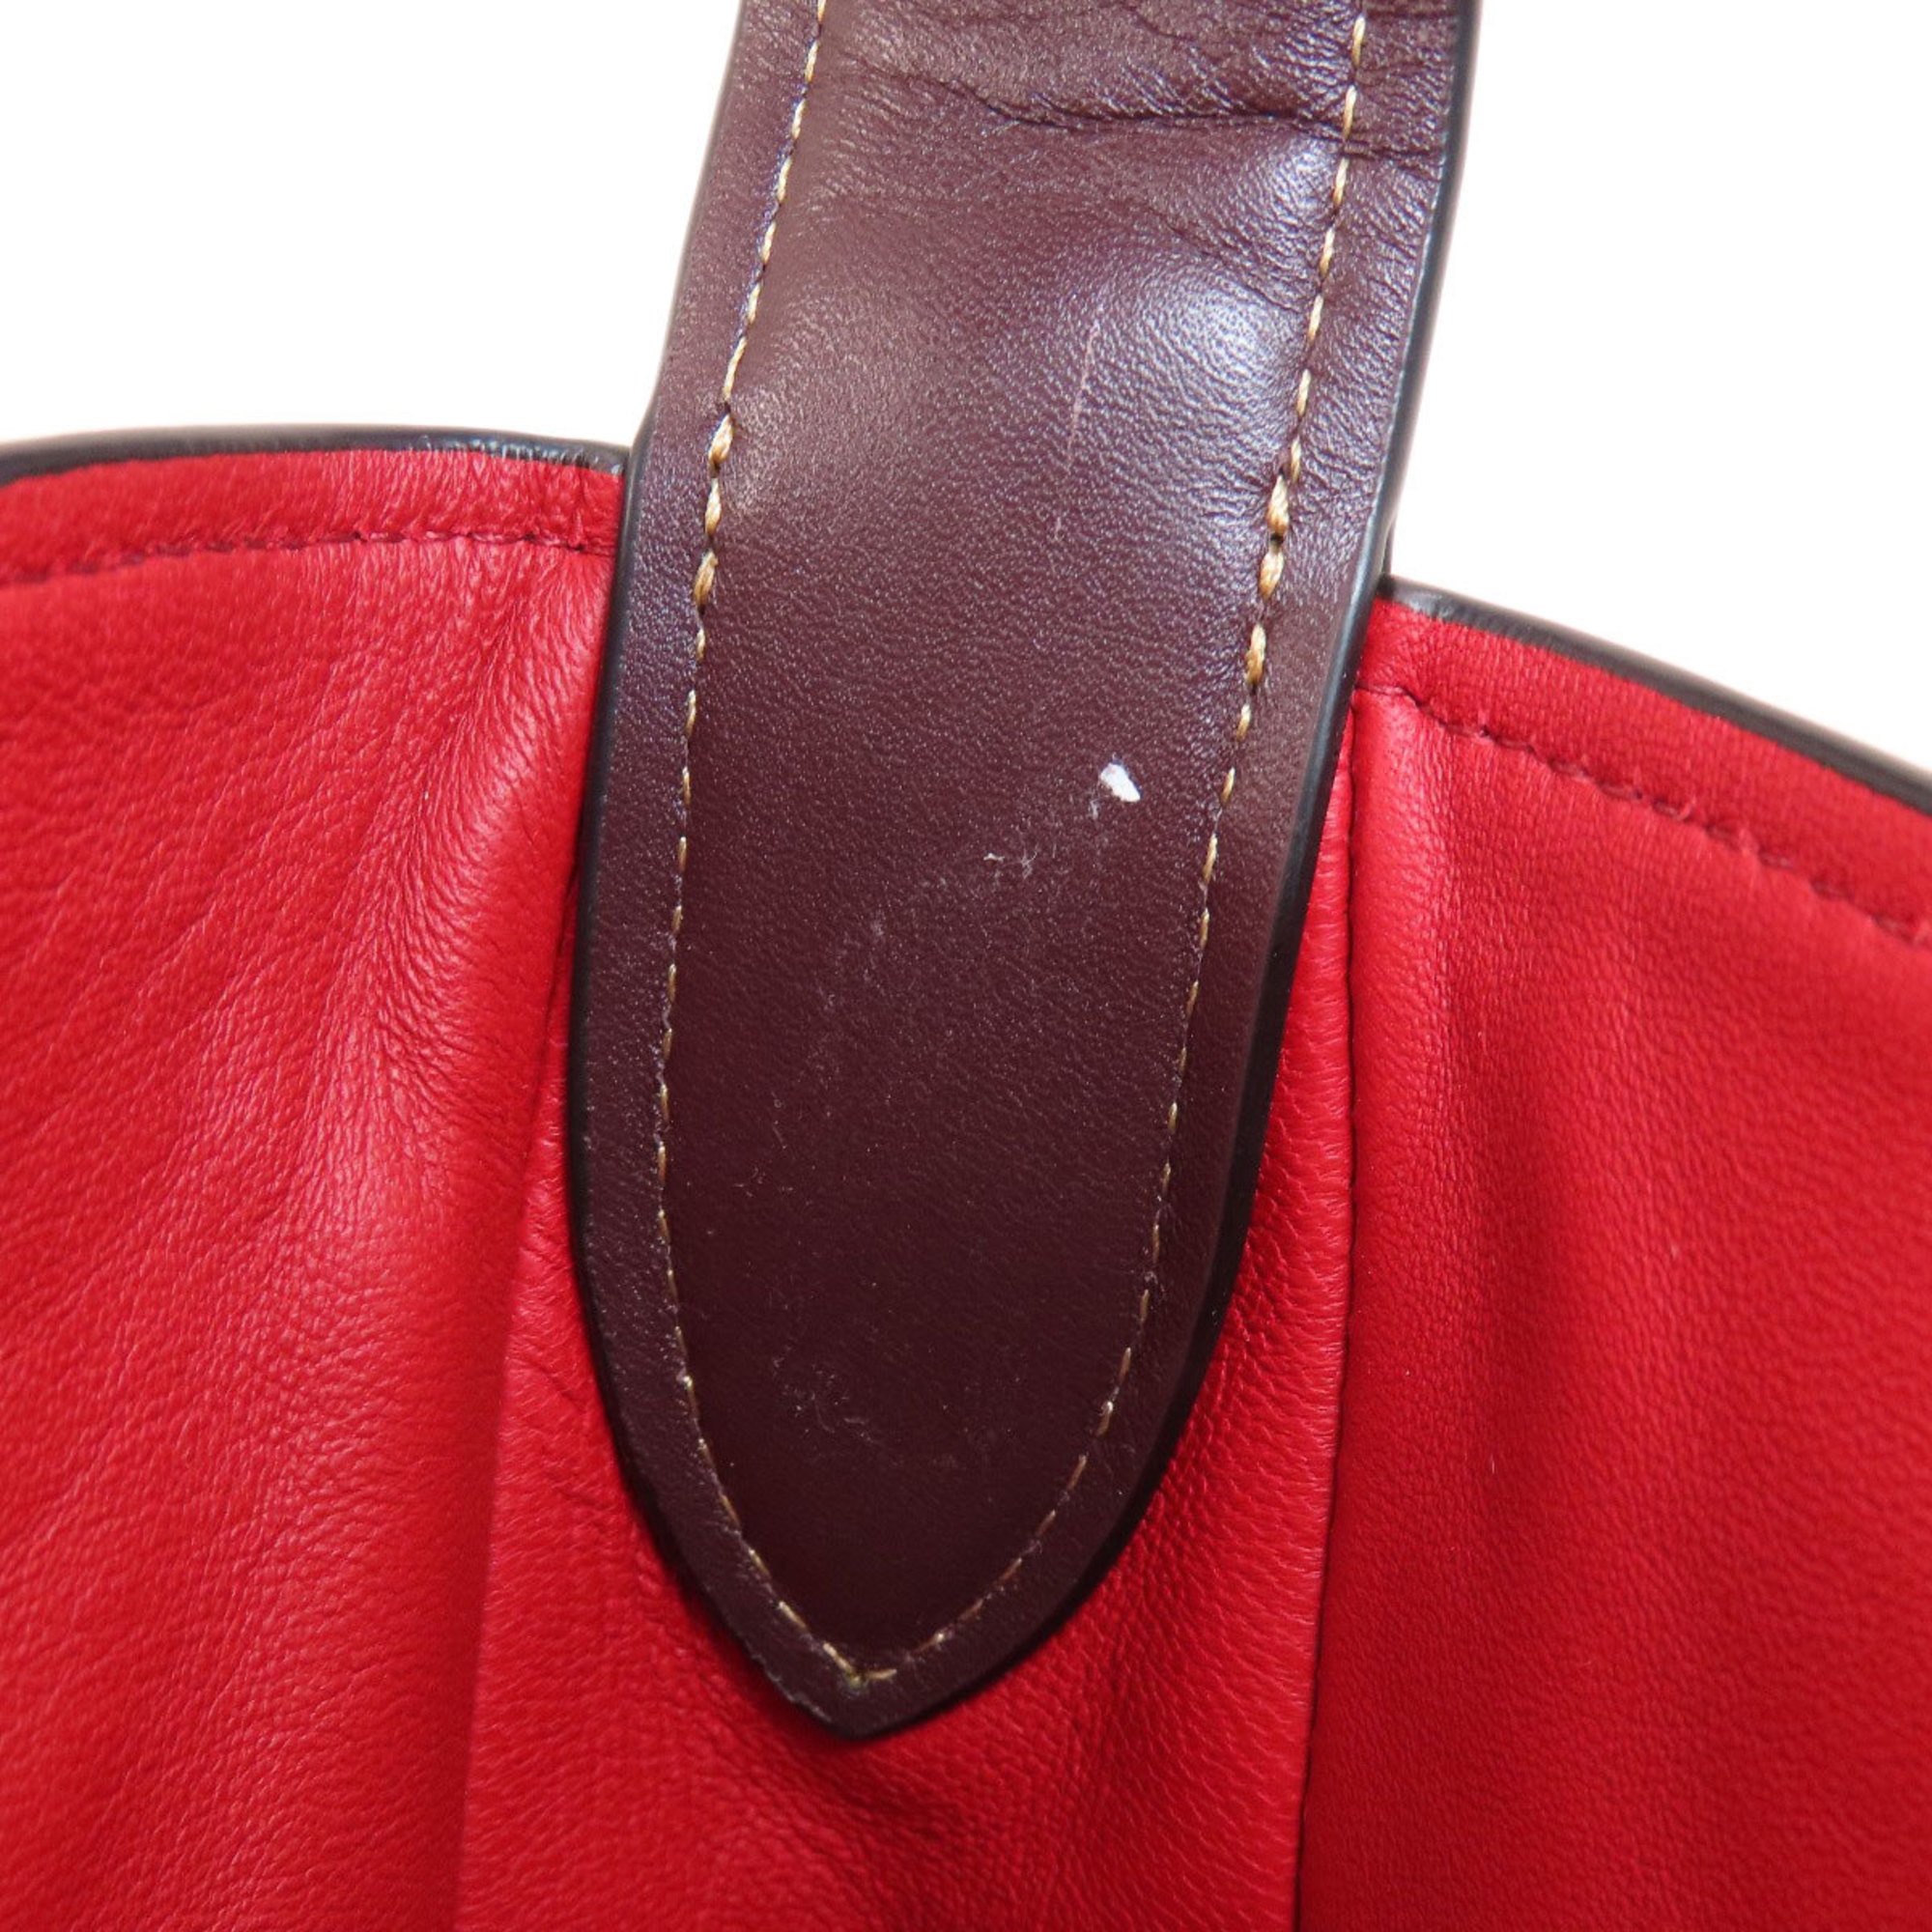 Coach 31674 Design Glove Tan Leather Tote Bag Women's COACH